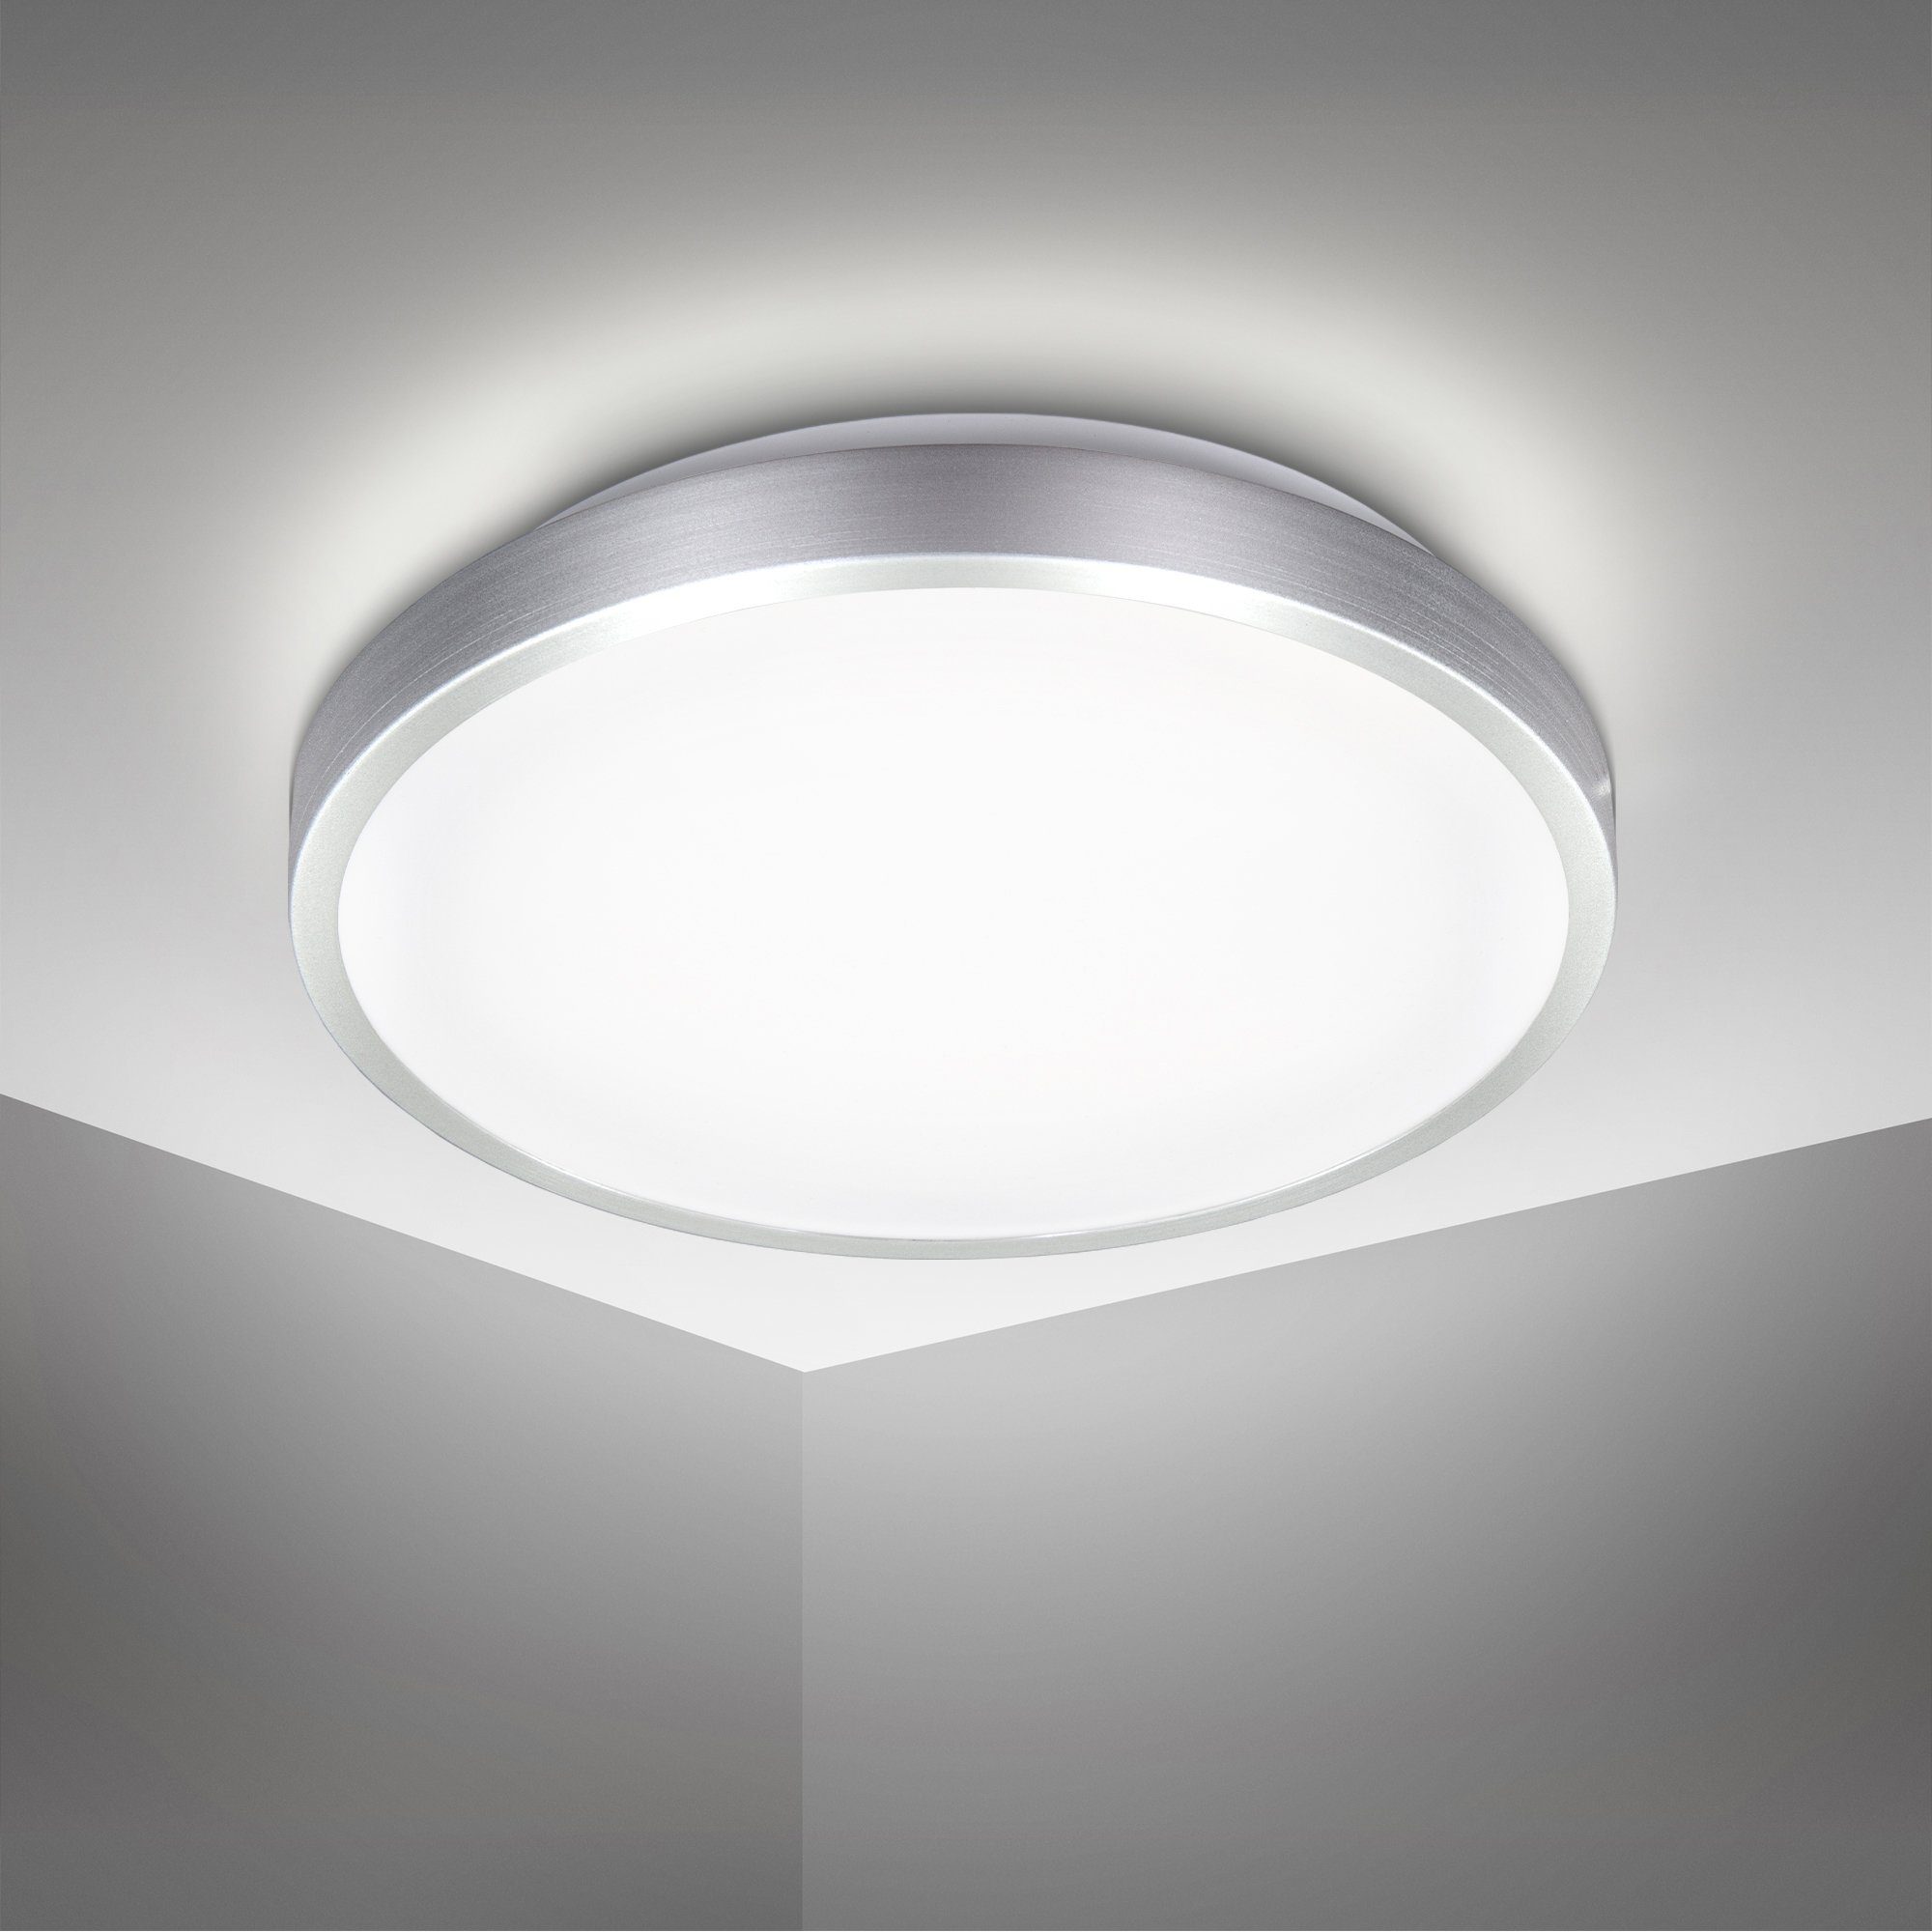 15W LED Deckenlampe Wohnzimmer Badleuchte Rund Panel Deckenleuchte Energiespar 